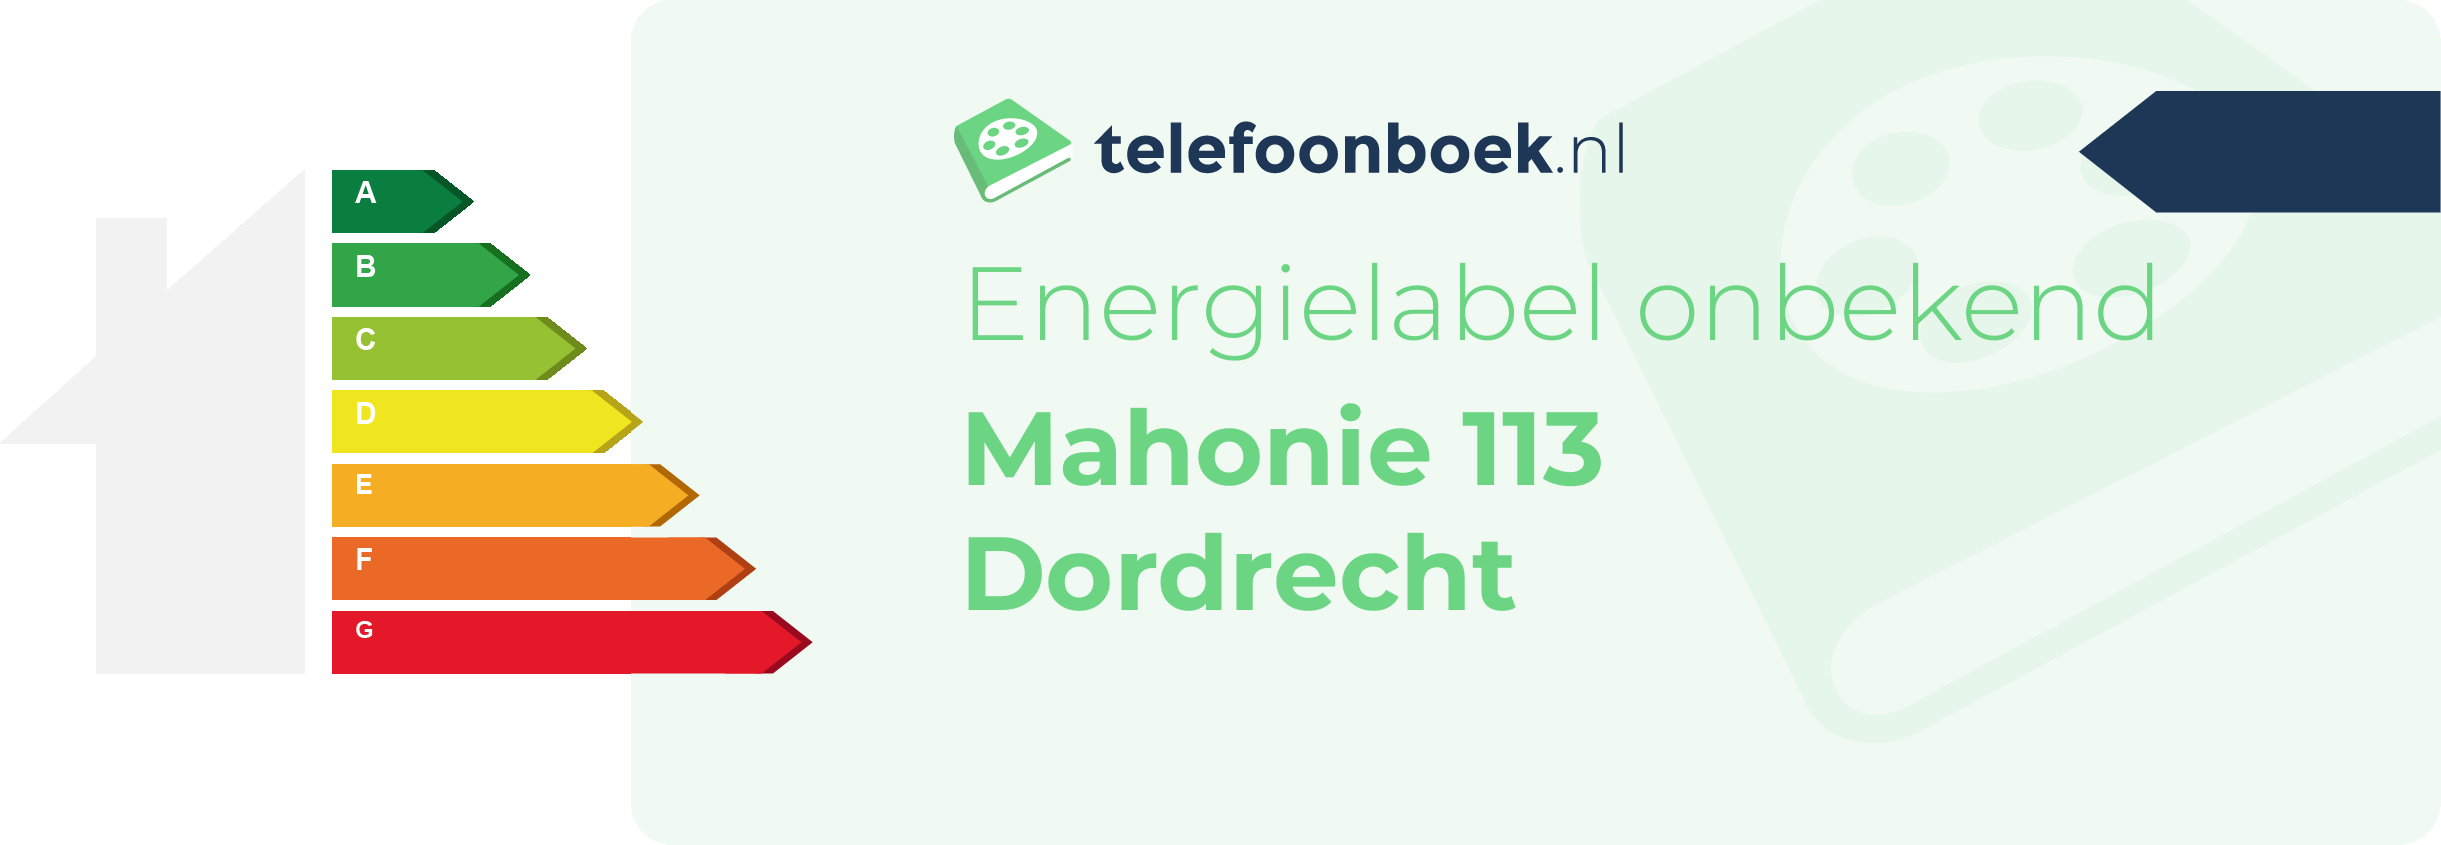 Energielabel Mahonie 113 Dordrecht